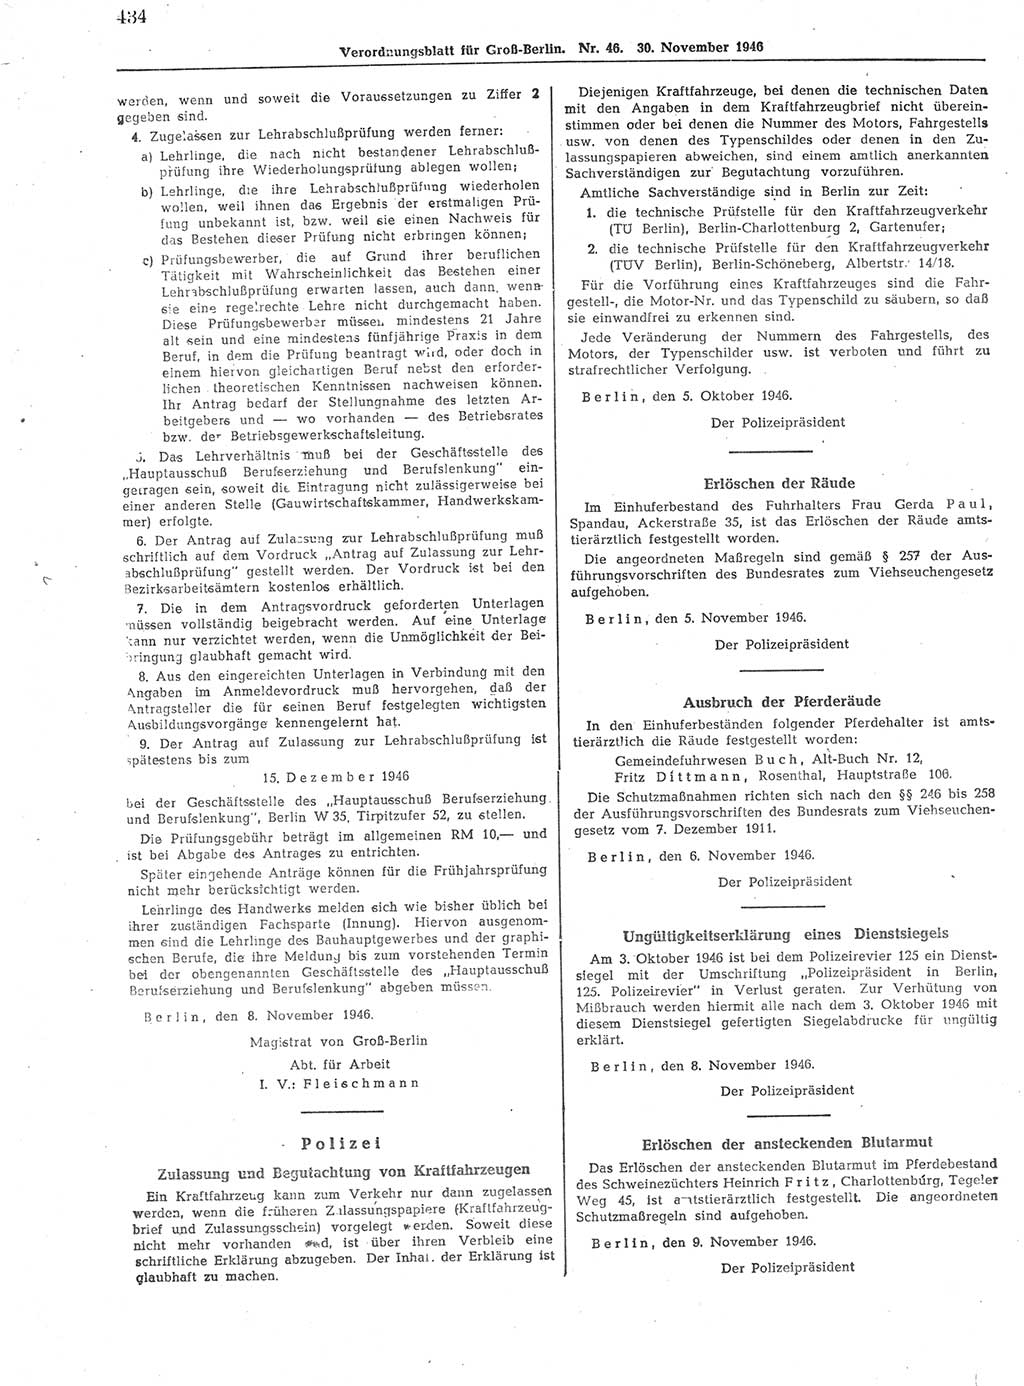 Verordnungsblatt (VOBl.) der Stadt Berlin, für Groß-Berlin 1946, Seite 434 (VOBl. Bln. 1946, S. 434)